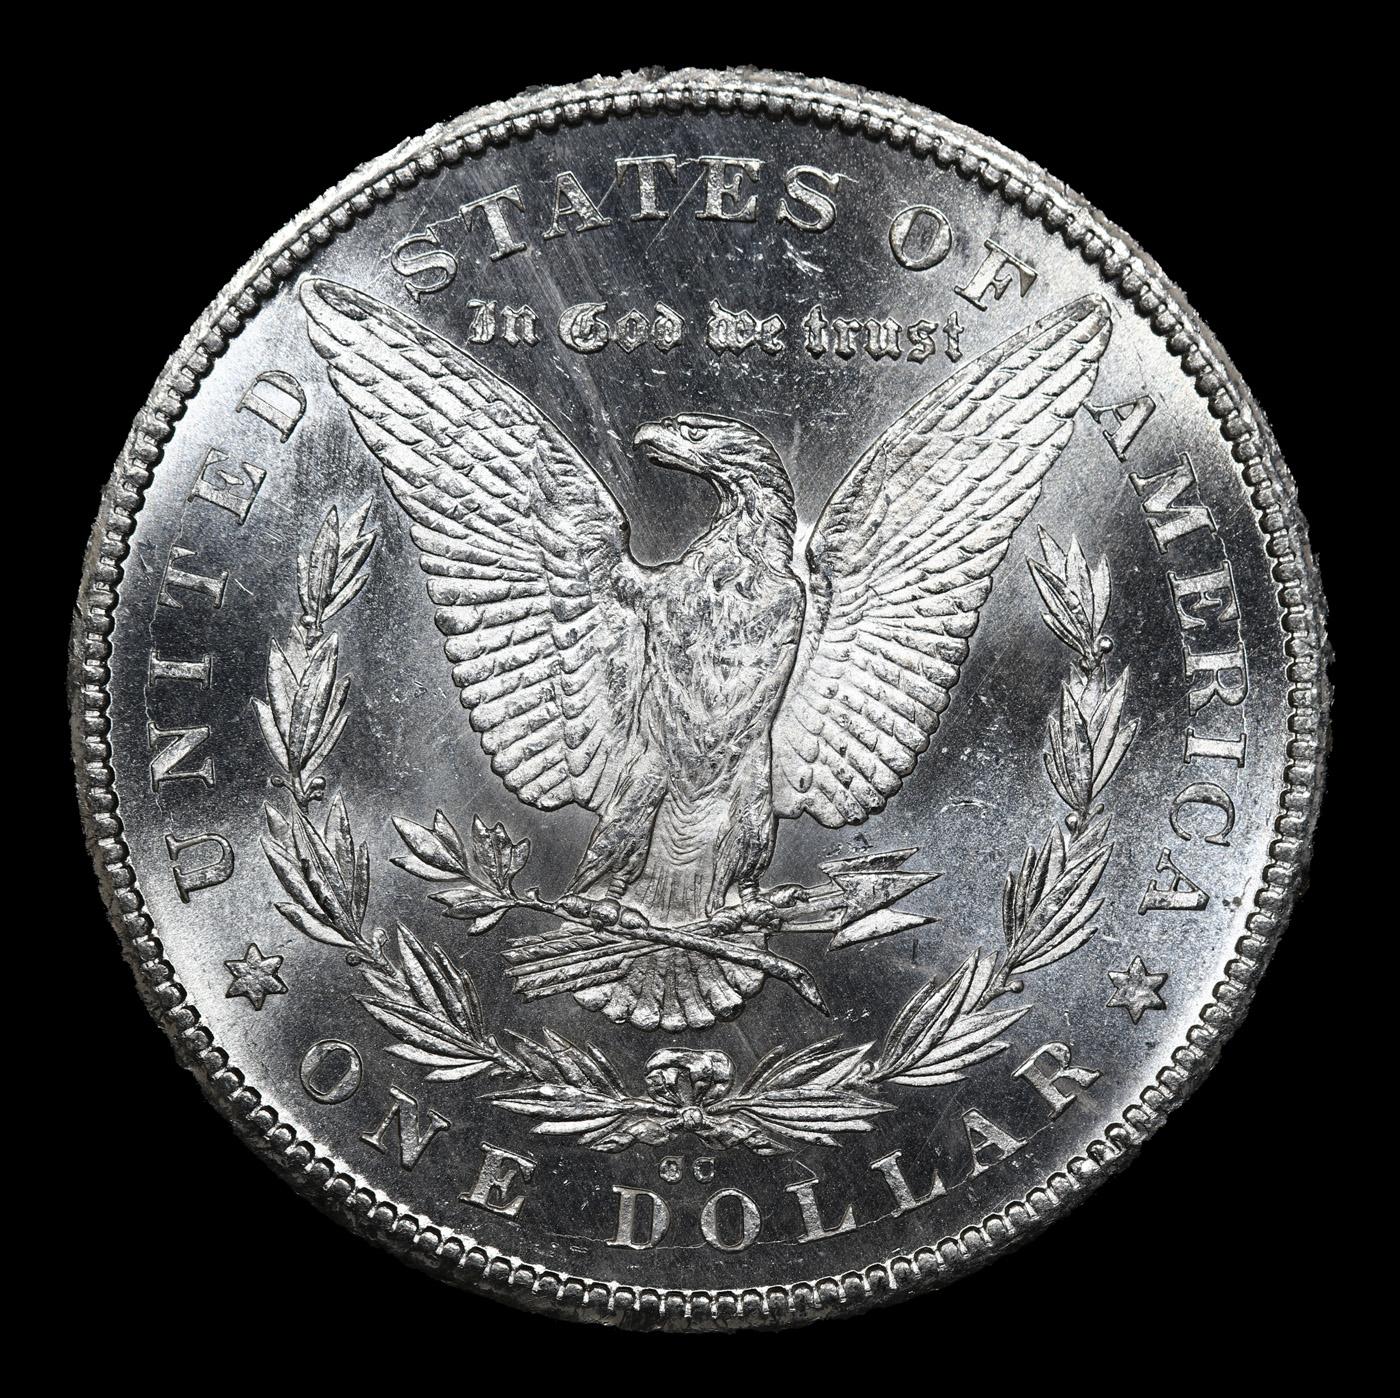 ***Auction Highlight*** 1878-cc Morgan Dollar VAM-19.2 $1 Graded ms63+ pl By SEGS (fc)